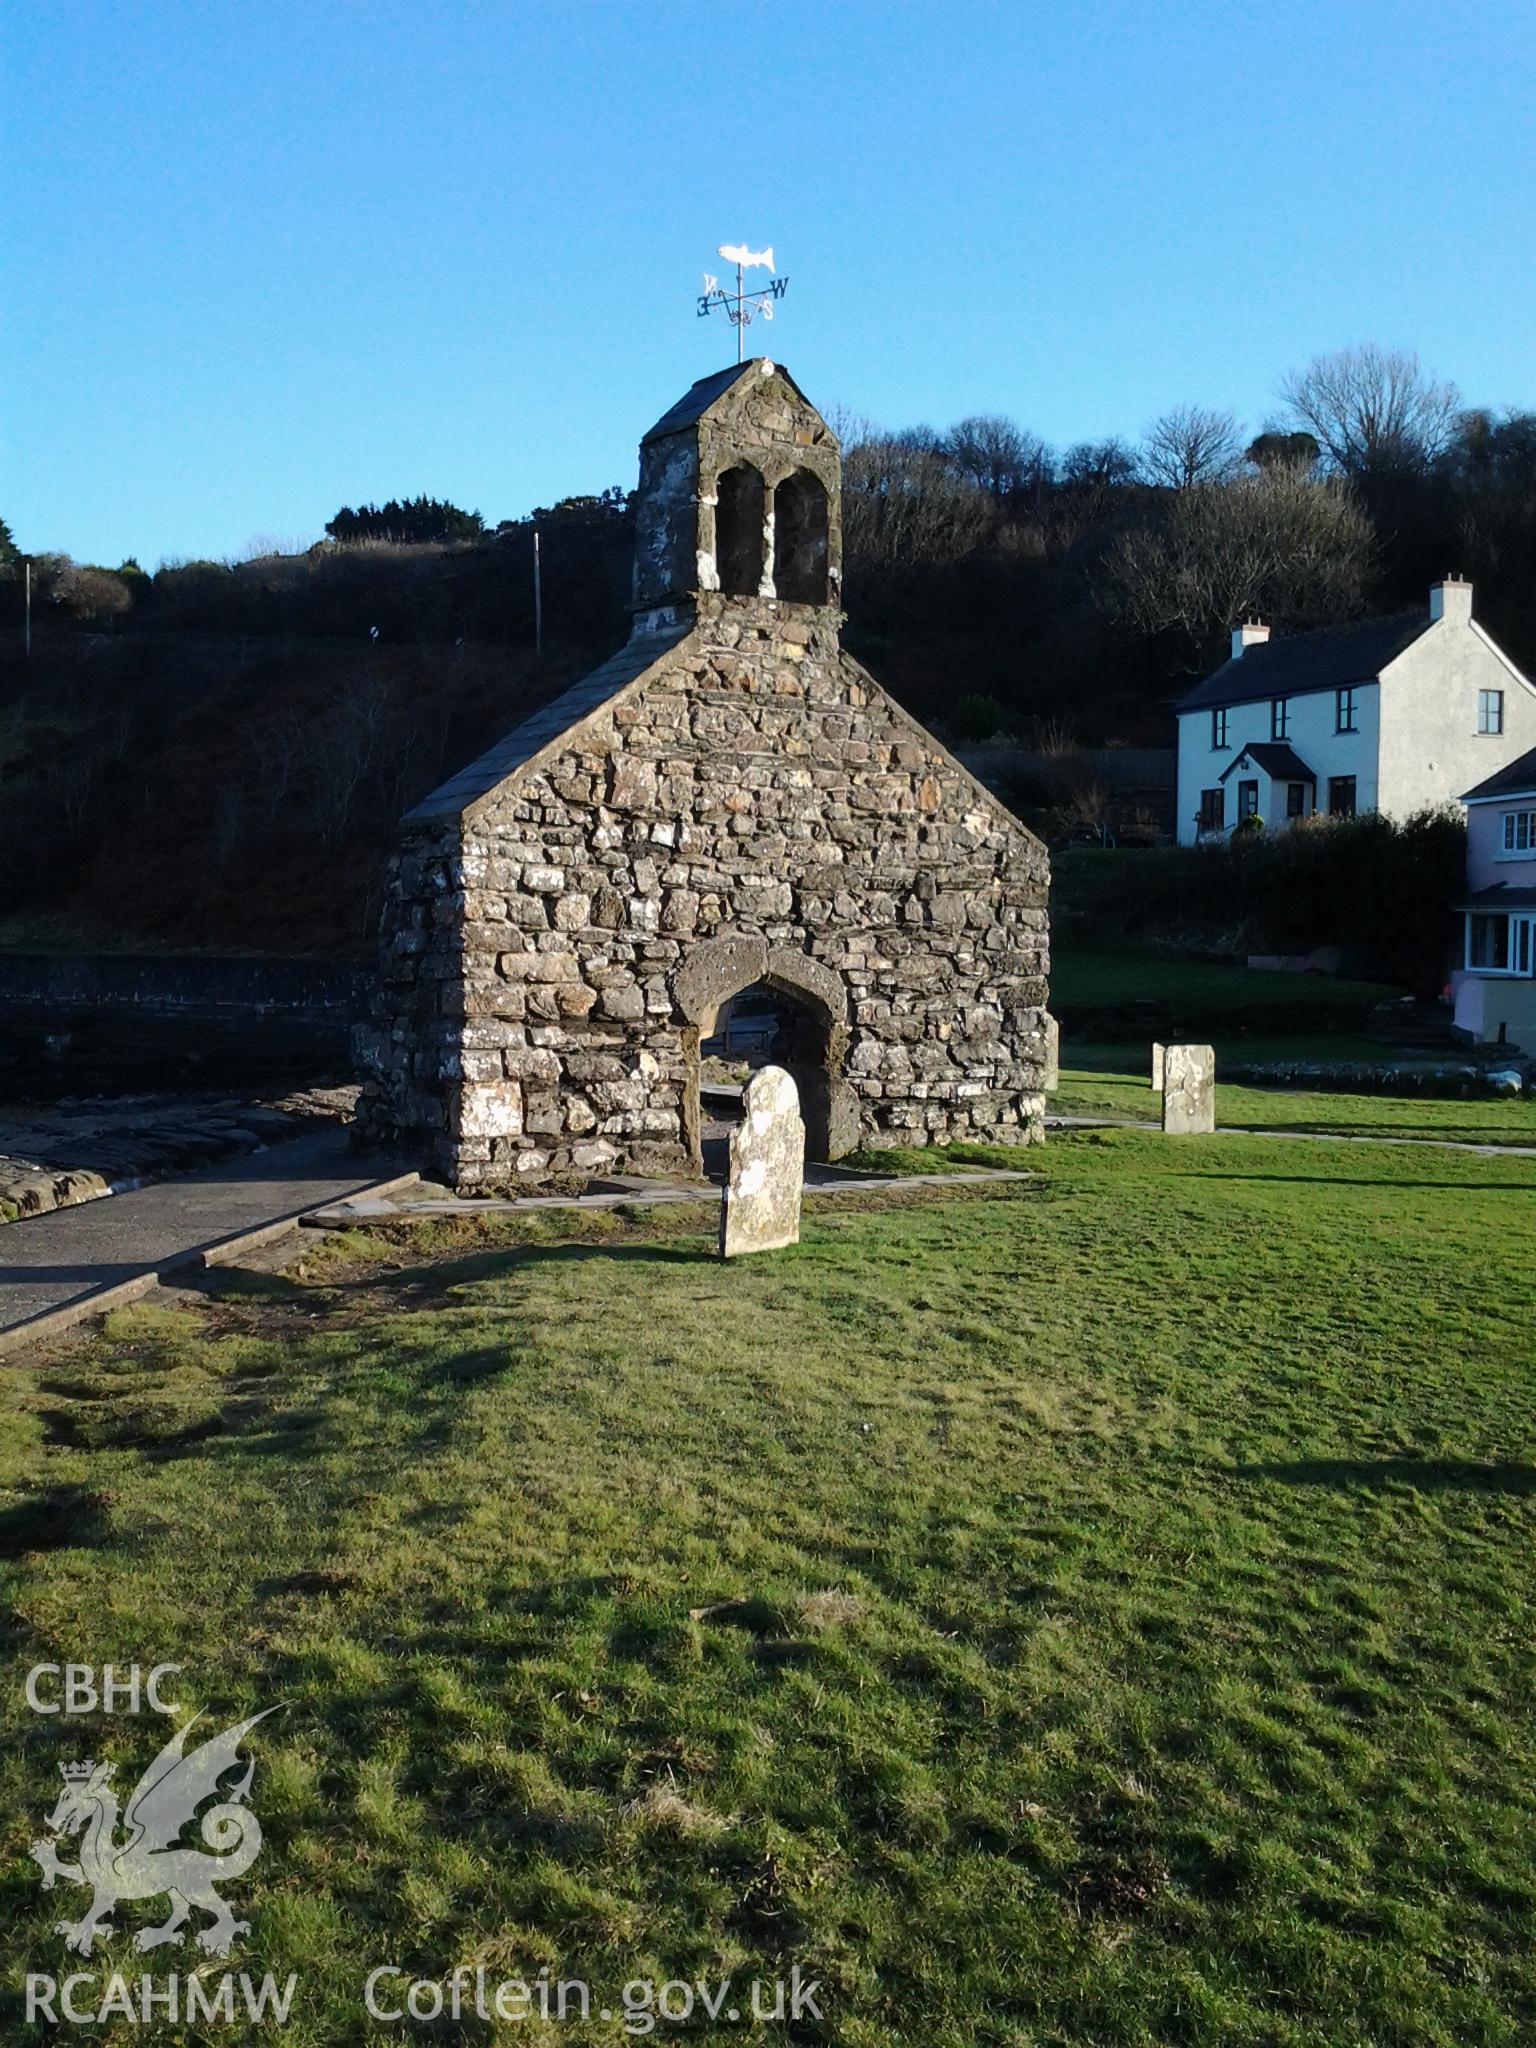 West wall of St Brynach's Church, Cwm-yr-eglwys, viewed from the north.